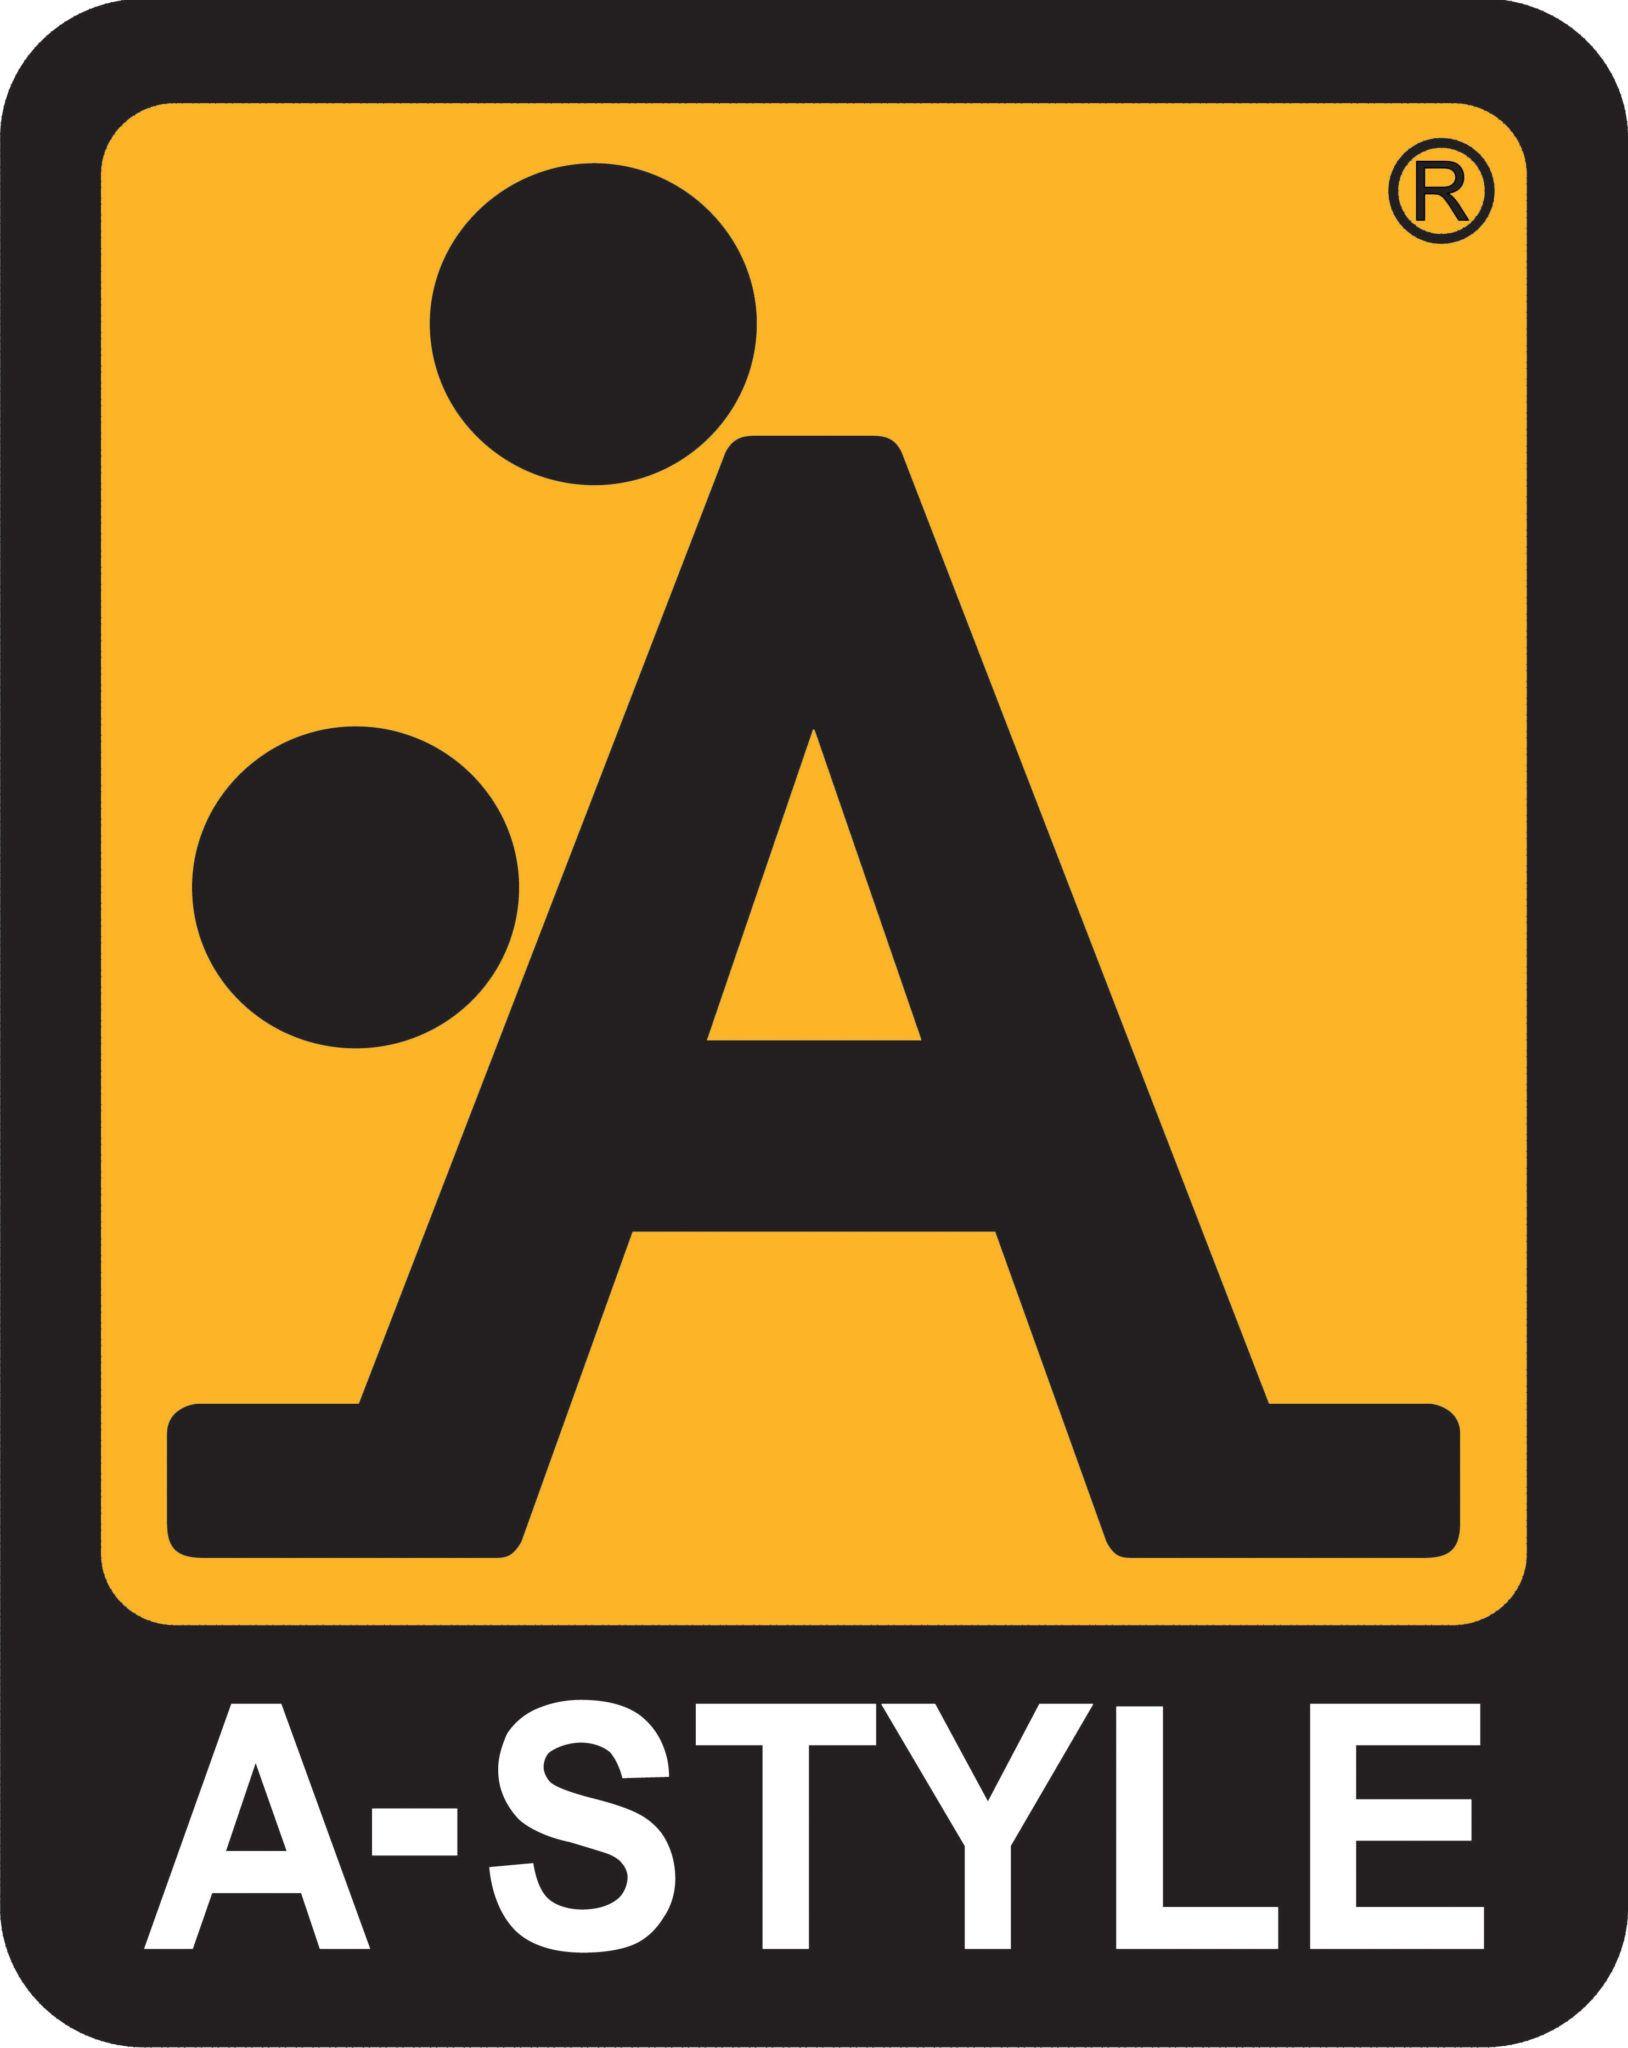 Italian Clothing Company Logo - Meet A Style, The Clothing Company With The Doggie Style Logo